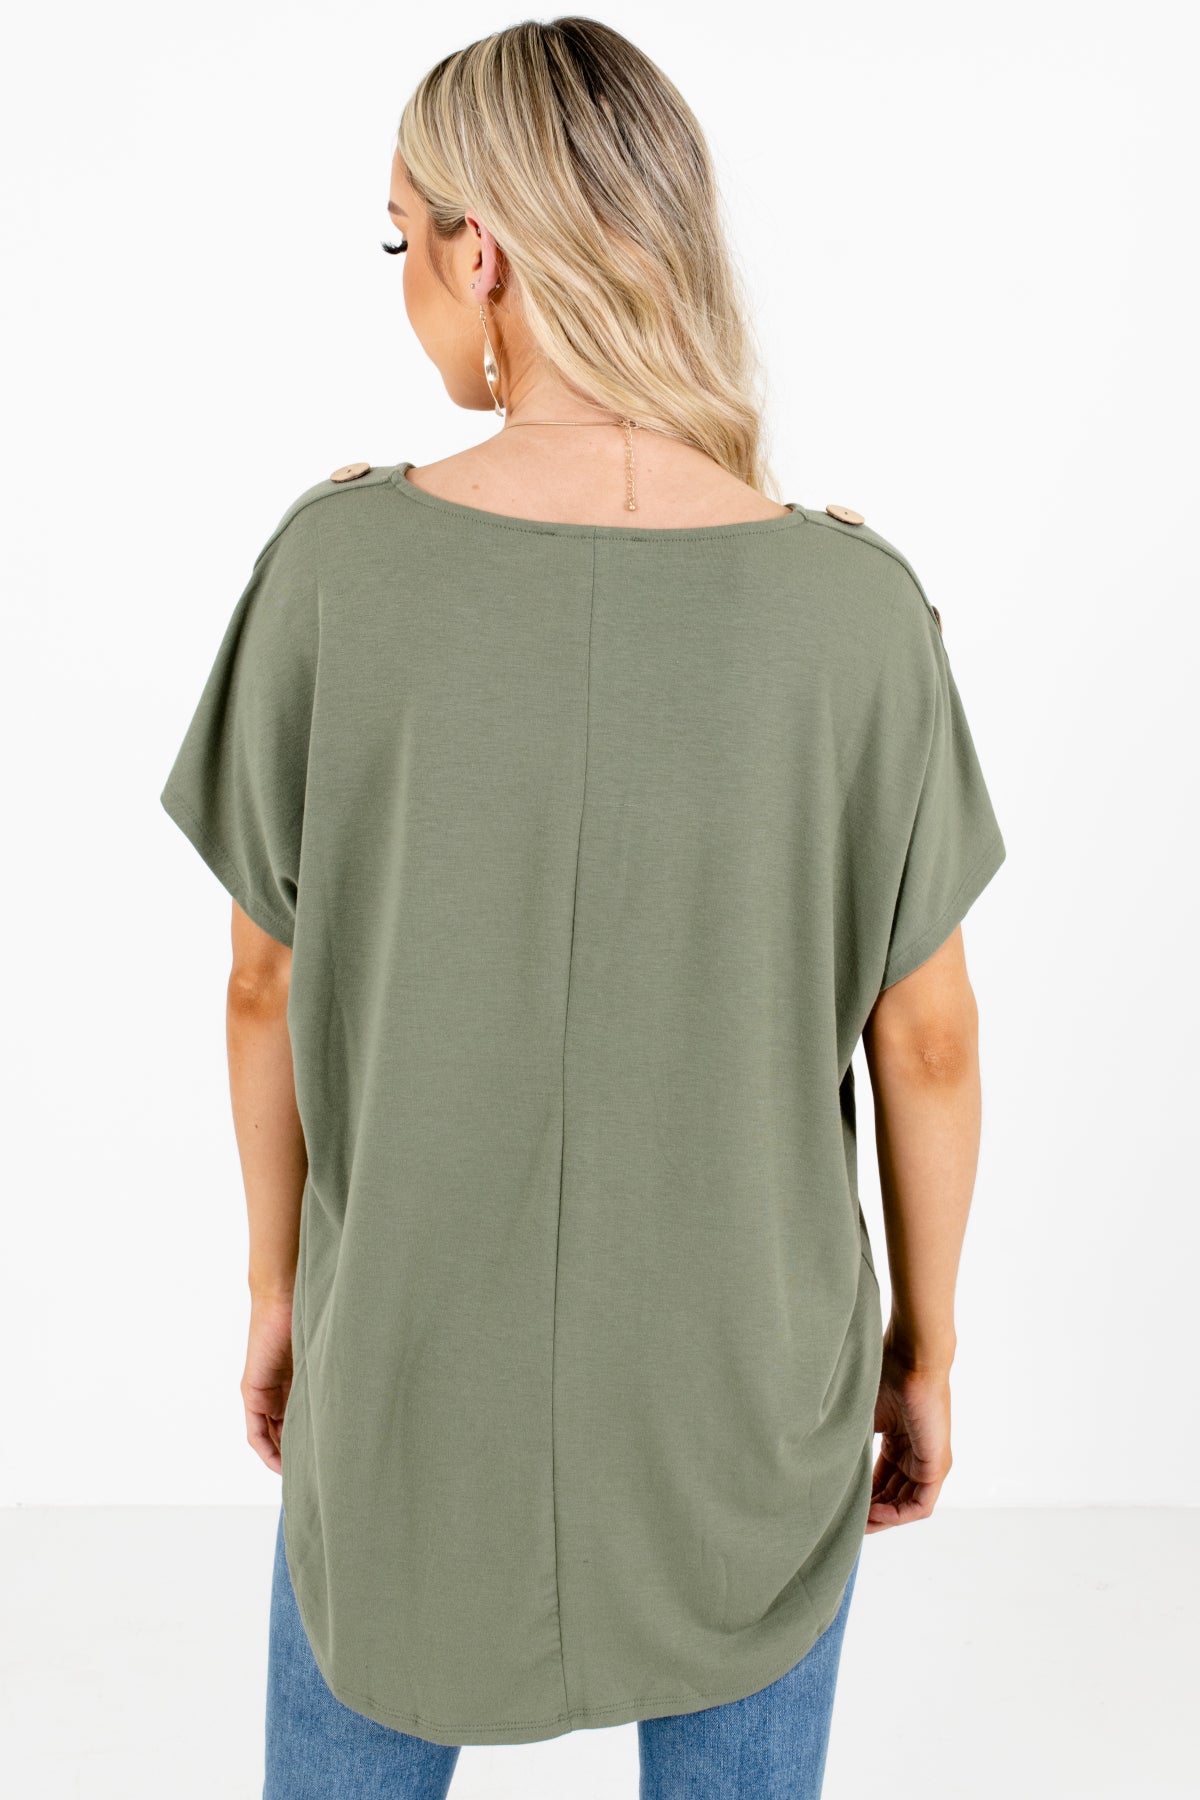 Women's Green Round Neckline Boutique Top